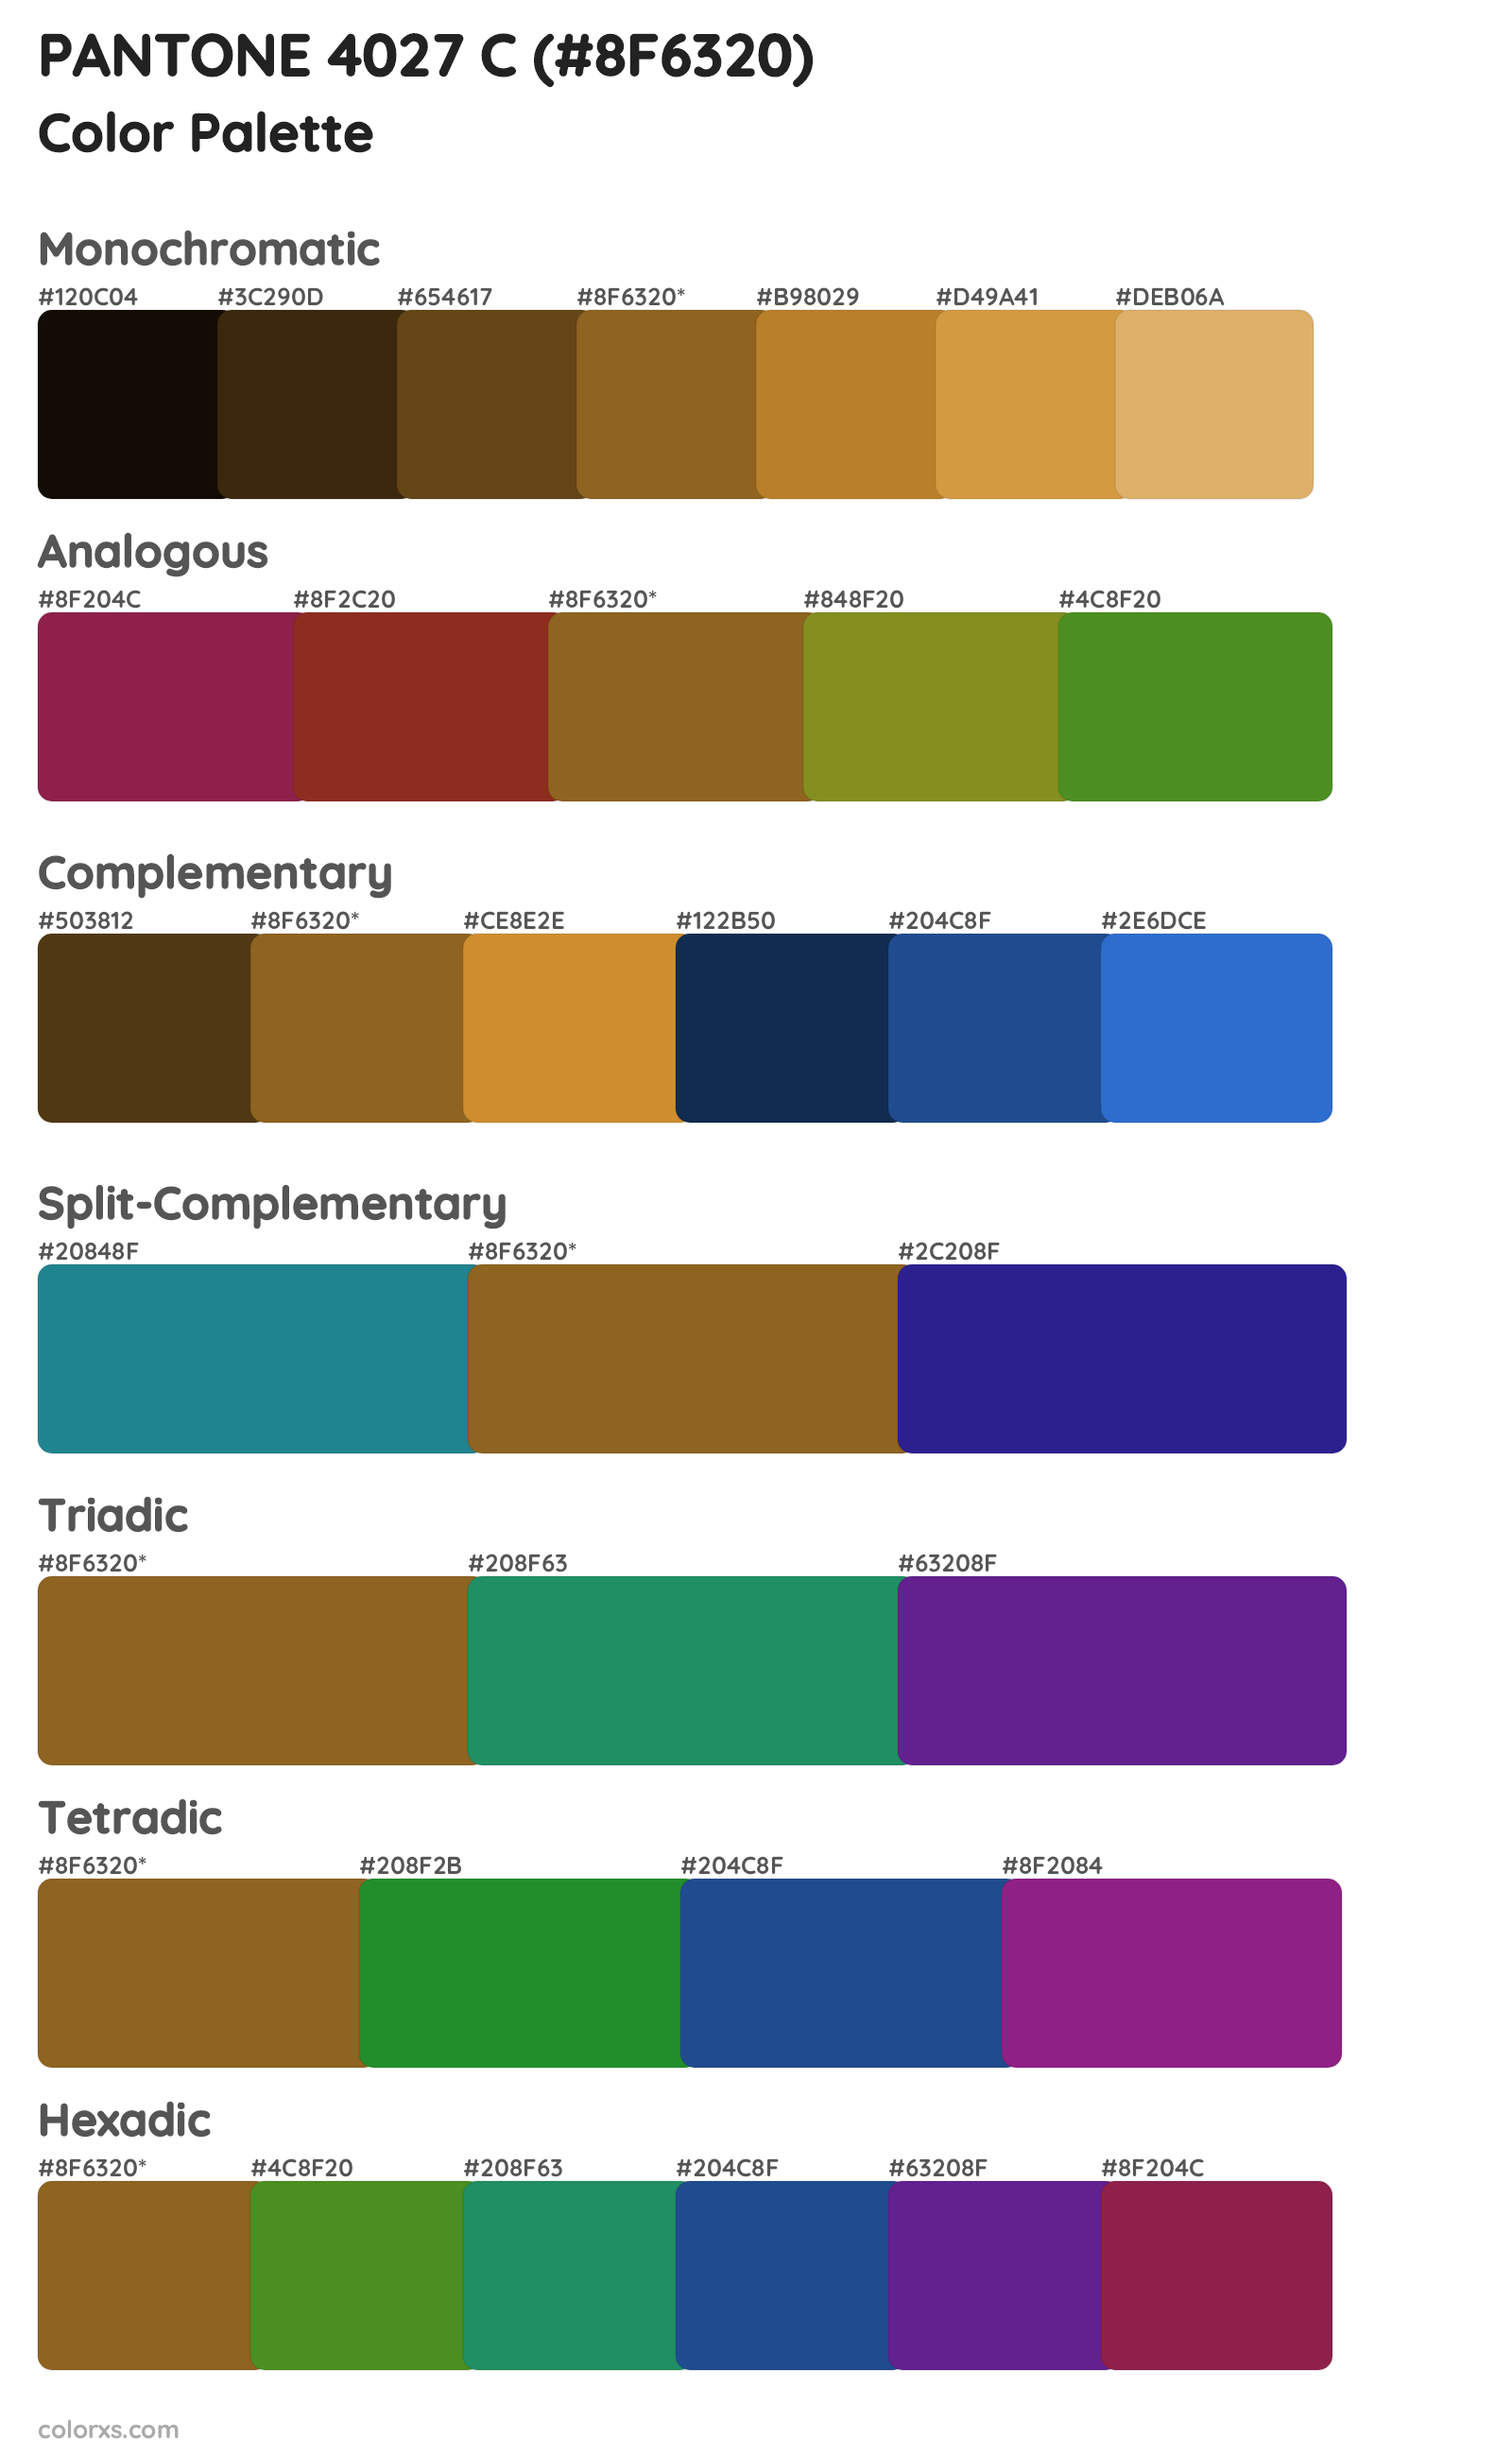 PANTONE 4027 C Color Scheme Palettes